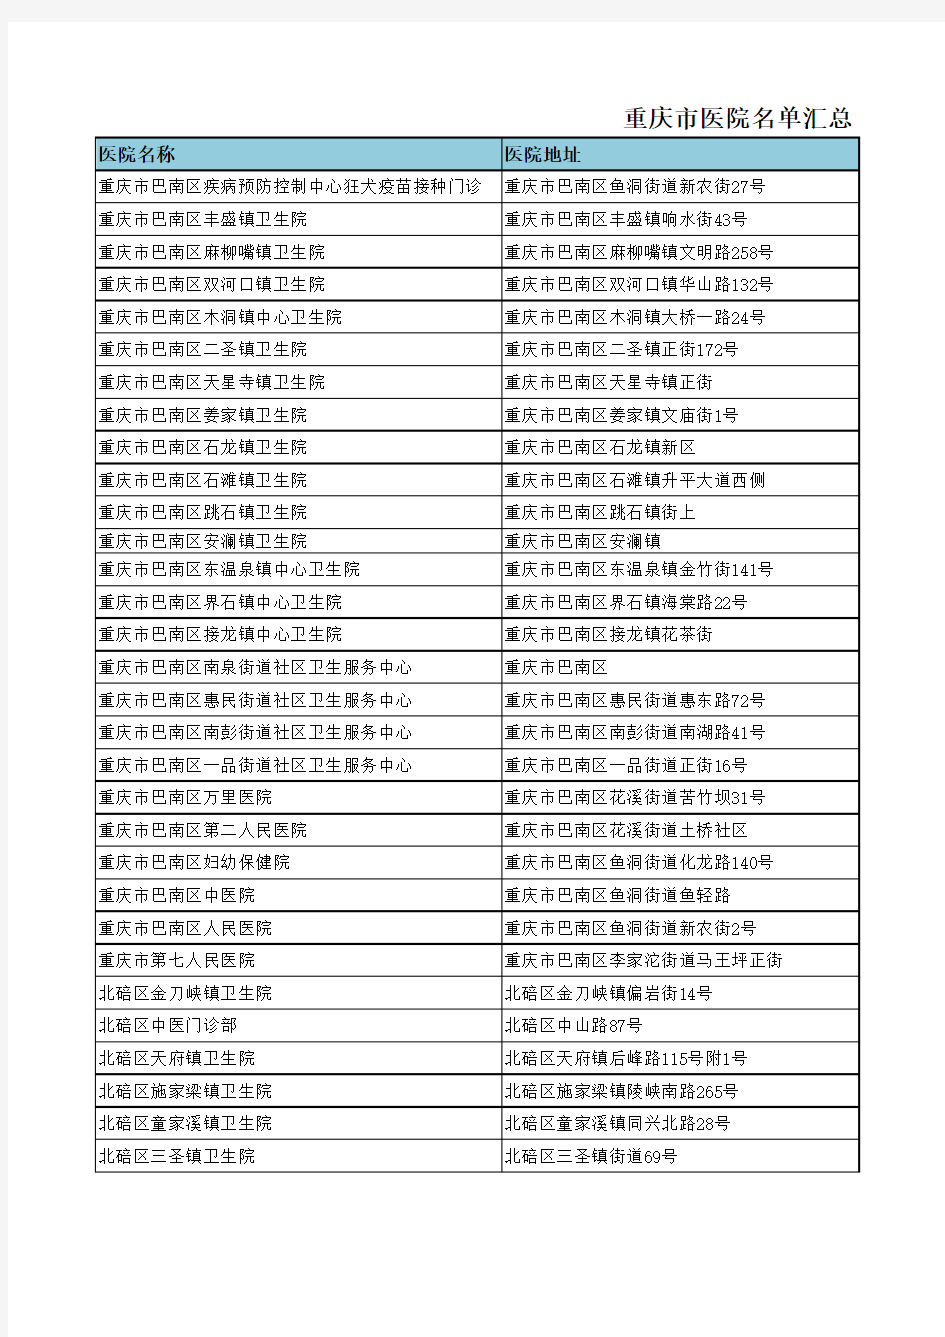 重庆市医院名单汇总-2015.12.10